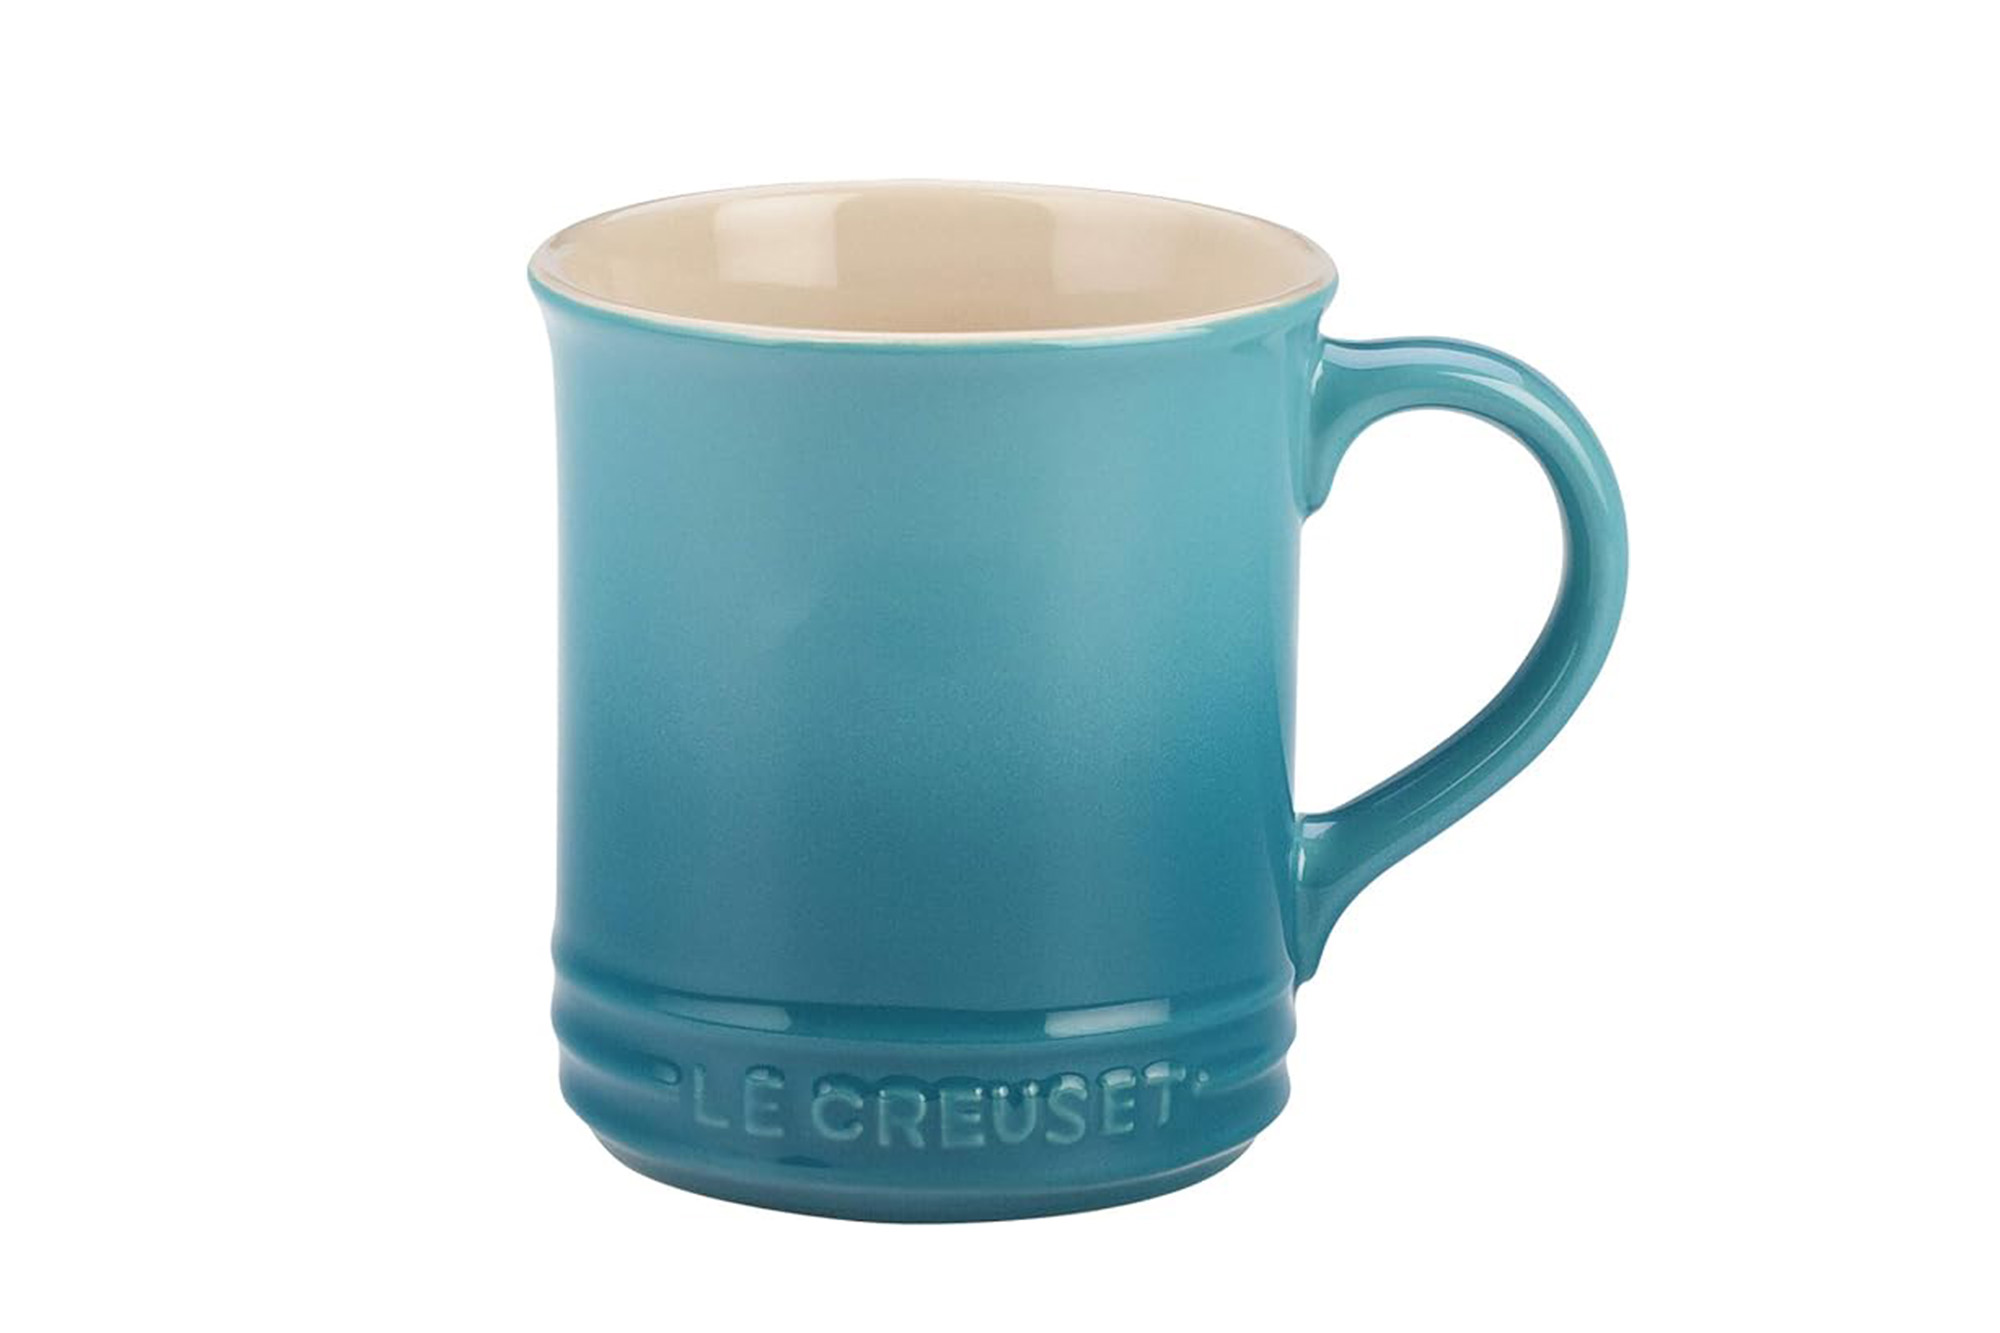 A blue Le Creuset mug